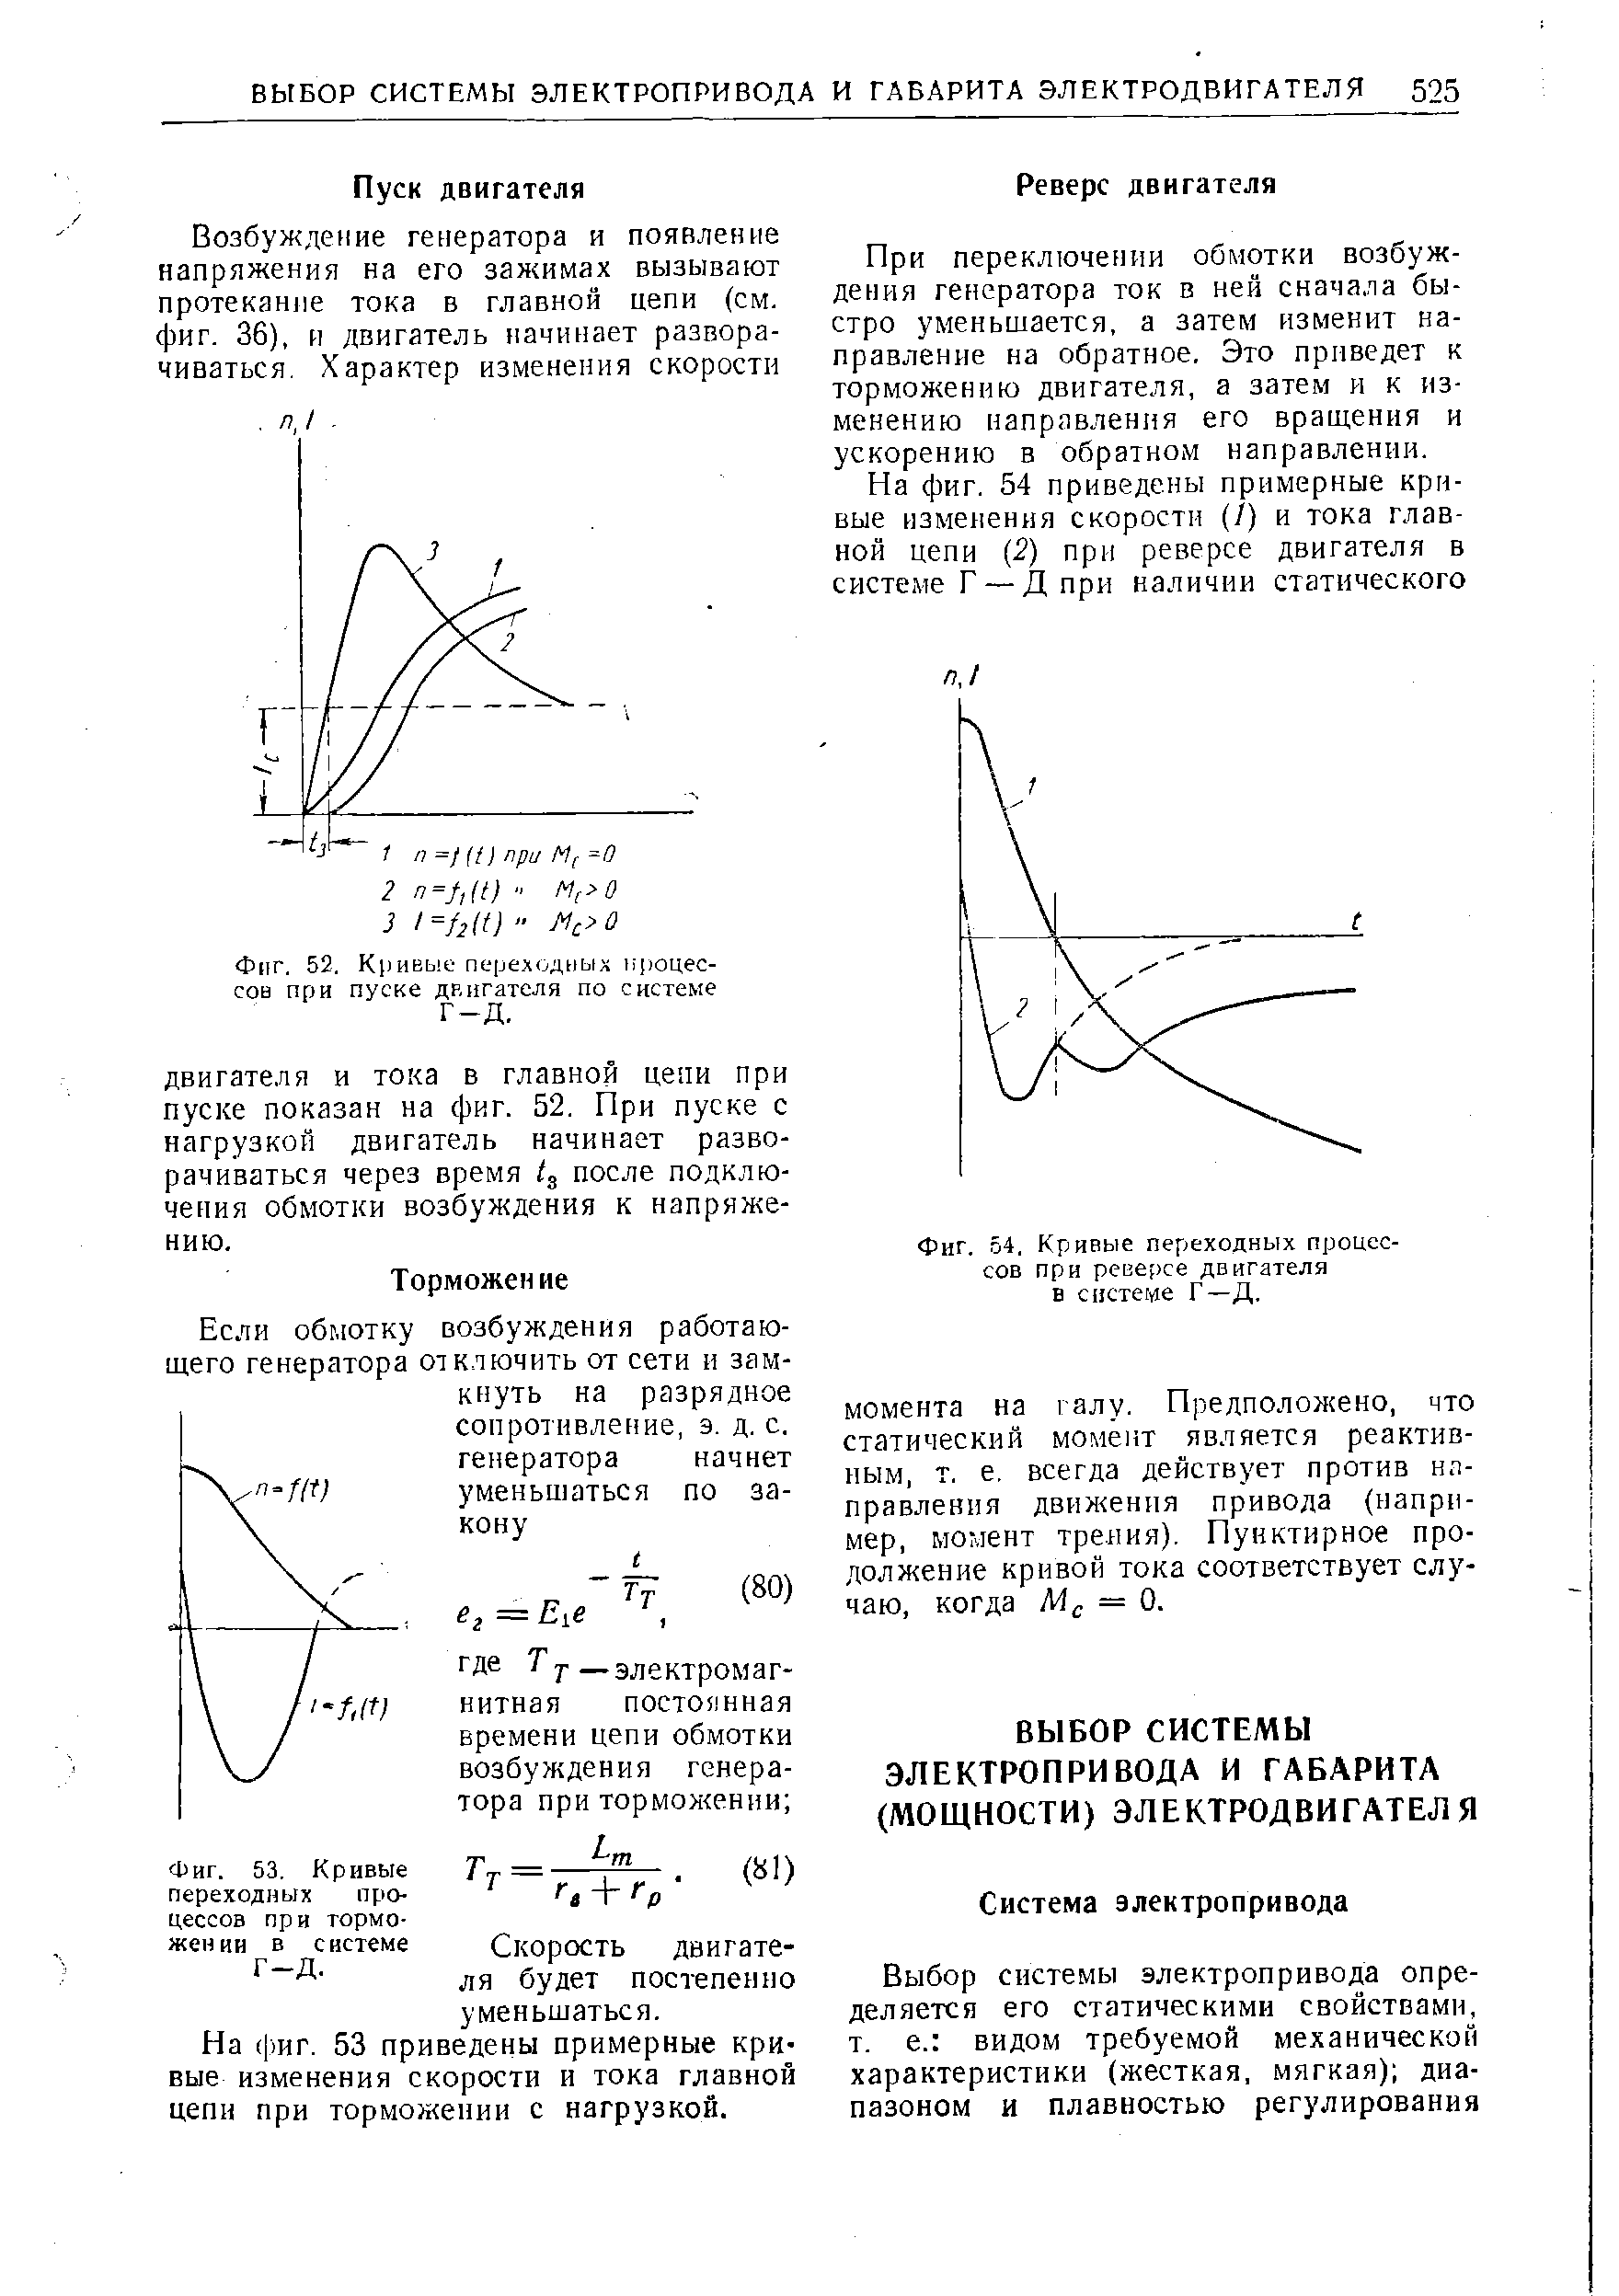 Фиг. 53. Кривые переходных процессов при торможении в системе Г-Д.
